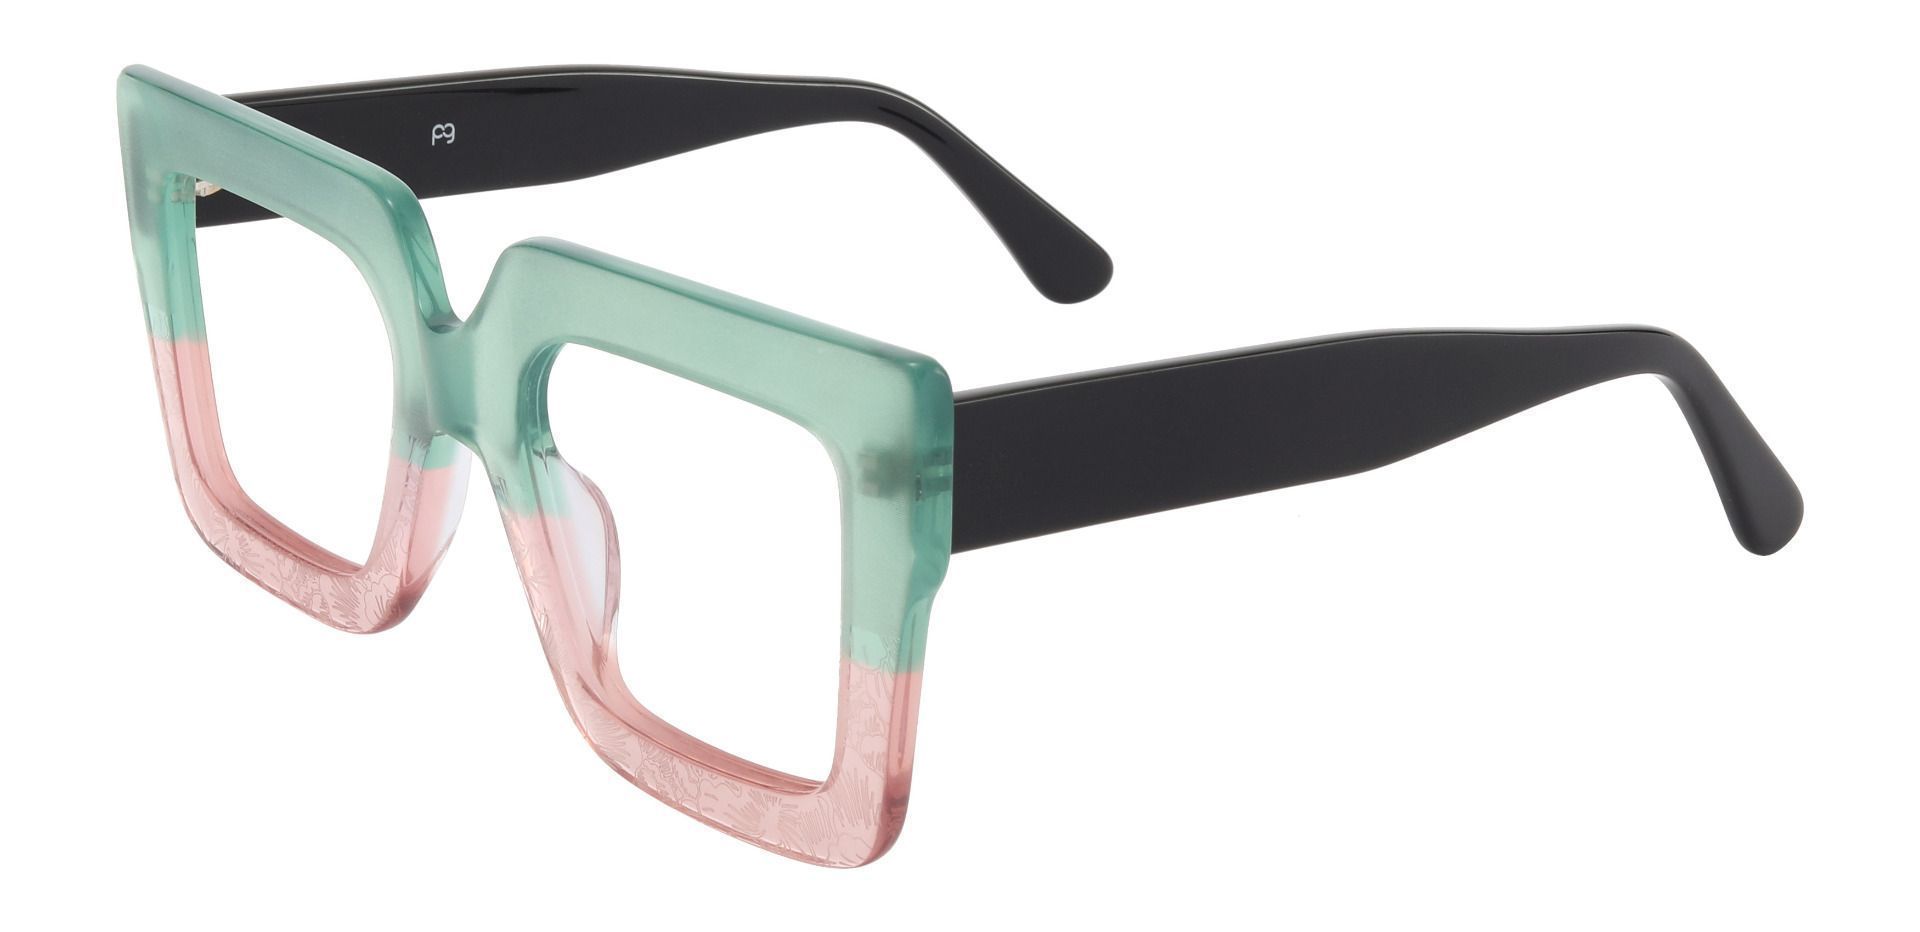 Summit Square Prescription Glasses - Green